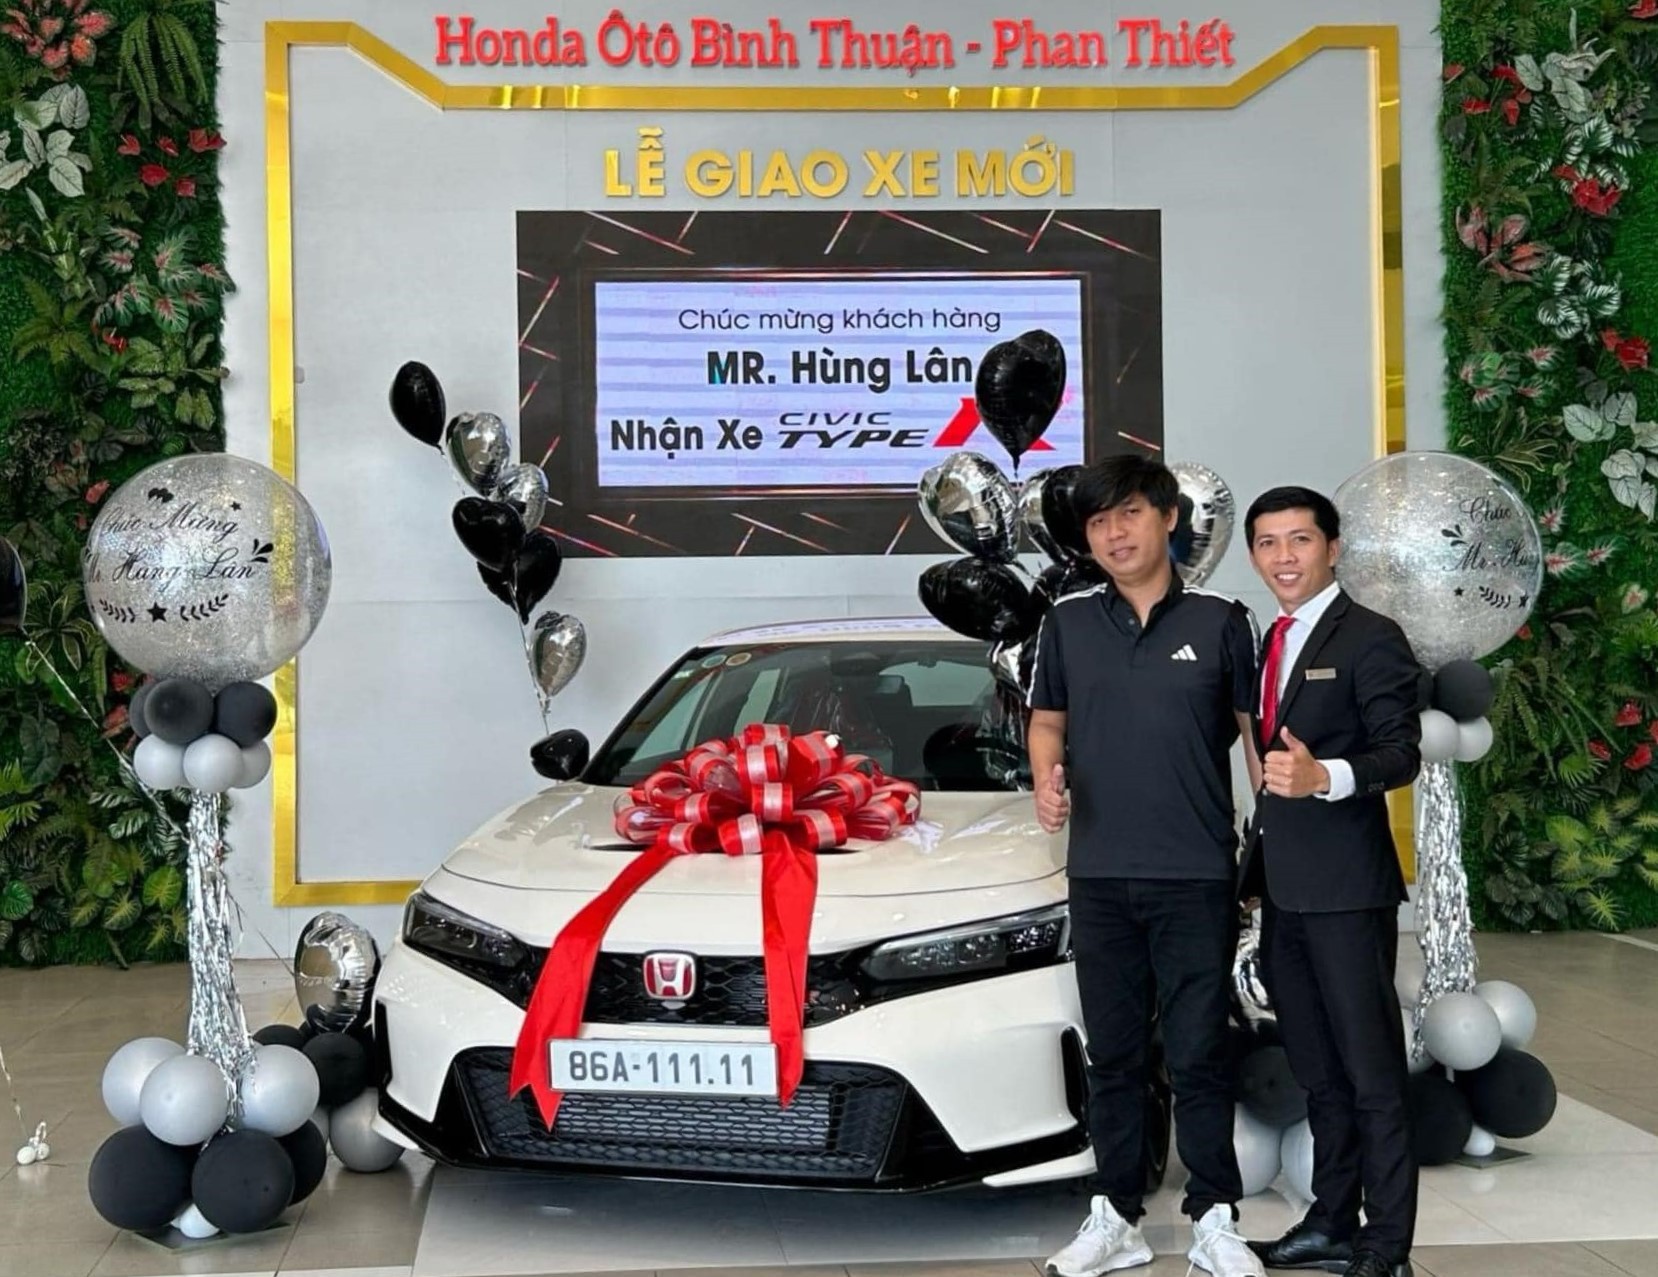 Dân chơi Bình Thuận 'tậu' Honda Civic Type R đeo biển số 5 quý 1